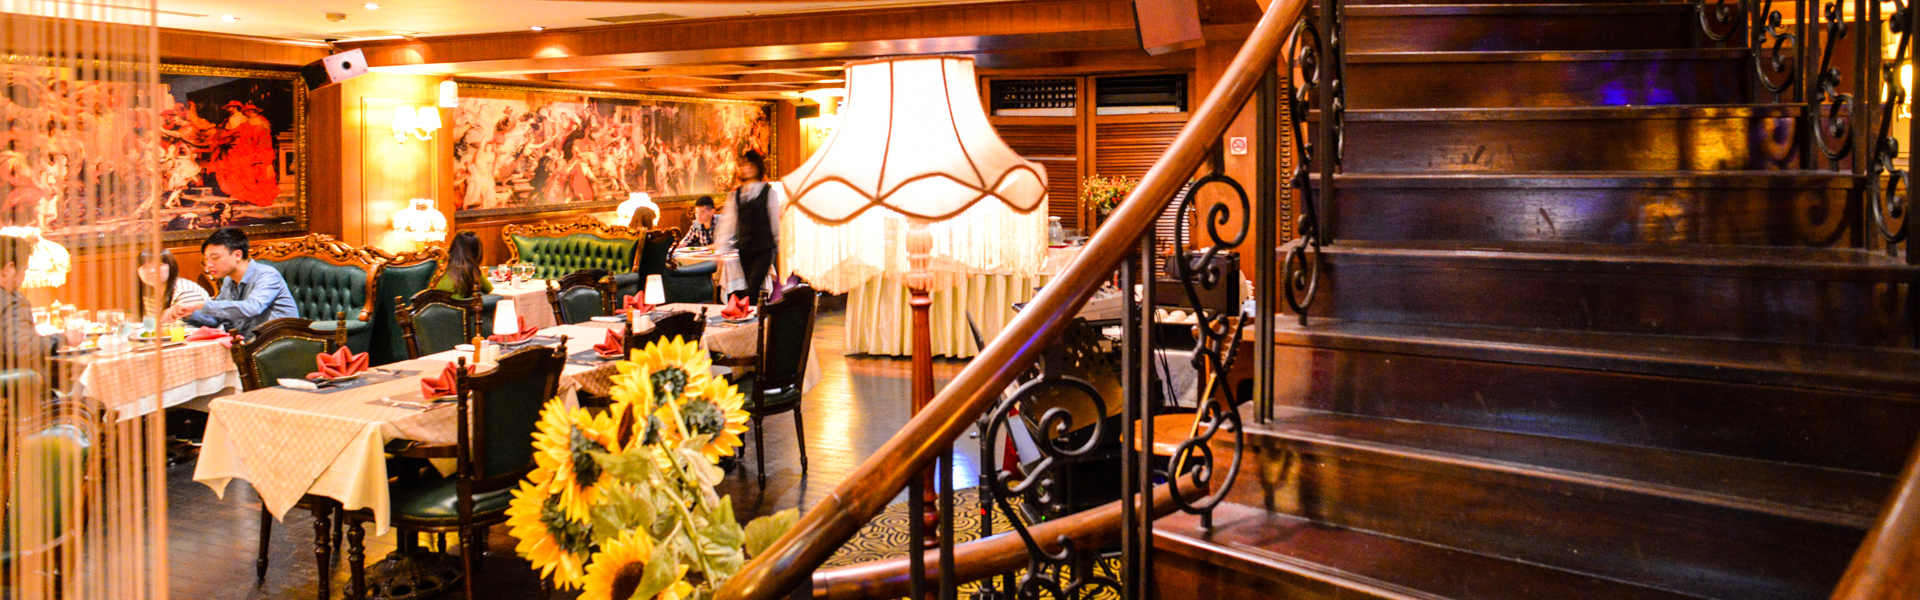 茶水巴黎西餐廳 適合慶祝情人節、紀念日的歐式古典餐廳 (近宜蘭火車站、東門夜市)